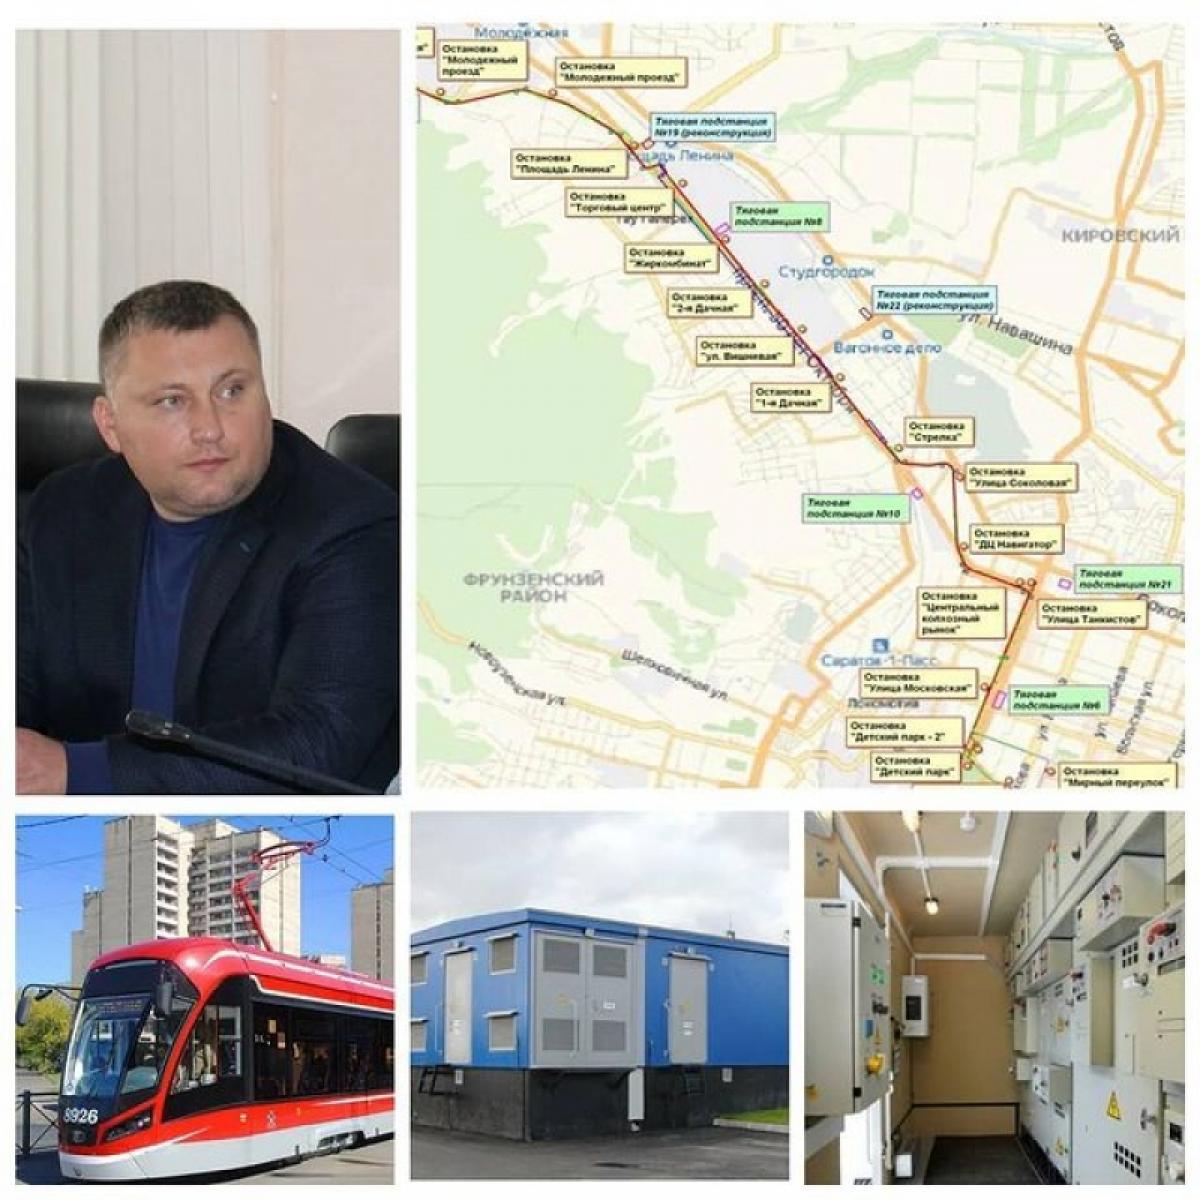 Проект скоростного трамвая в Саратове: в мэрии рассказали о закупке оборудования